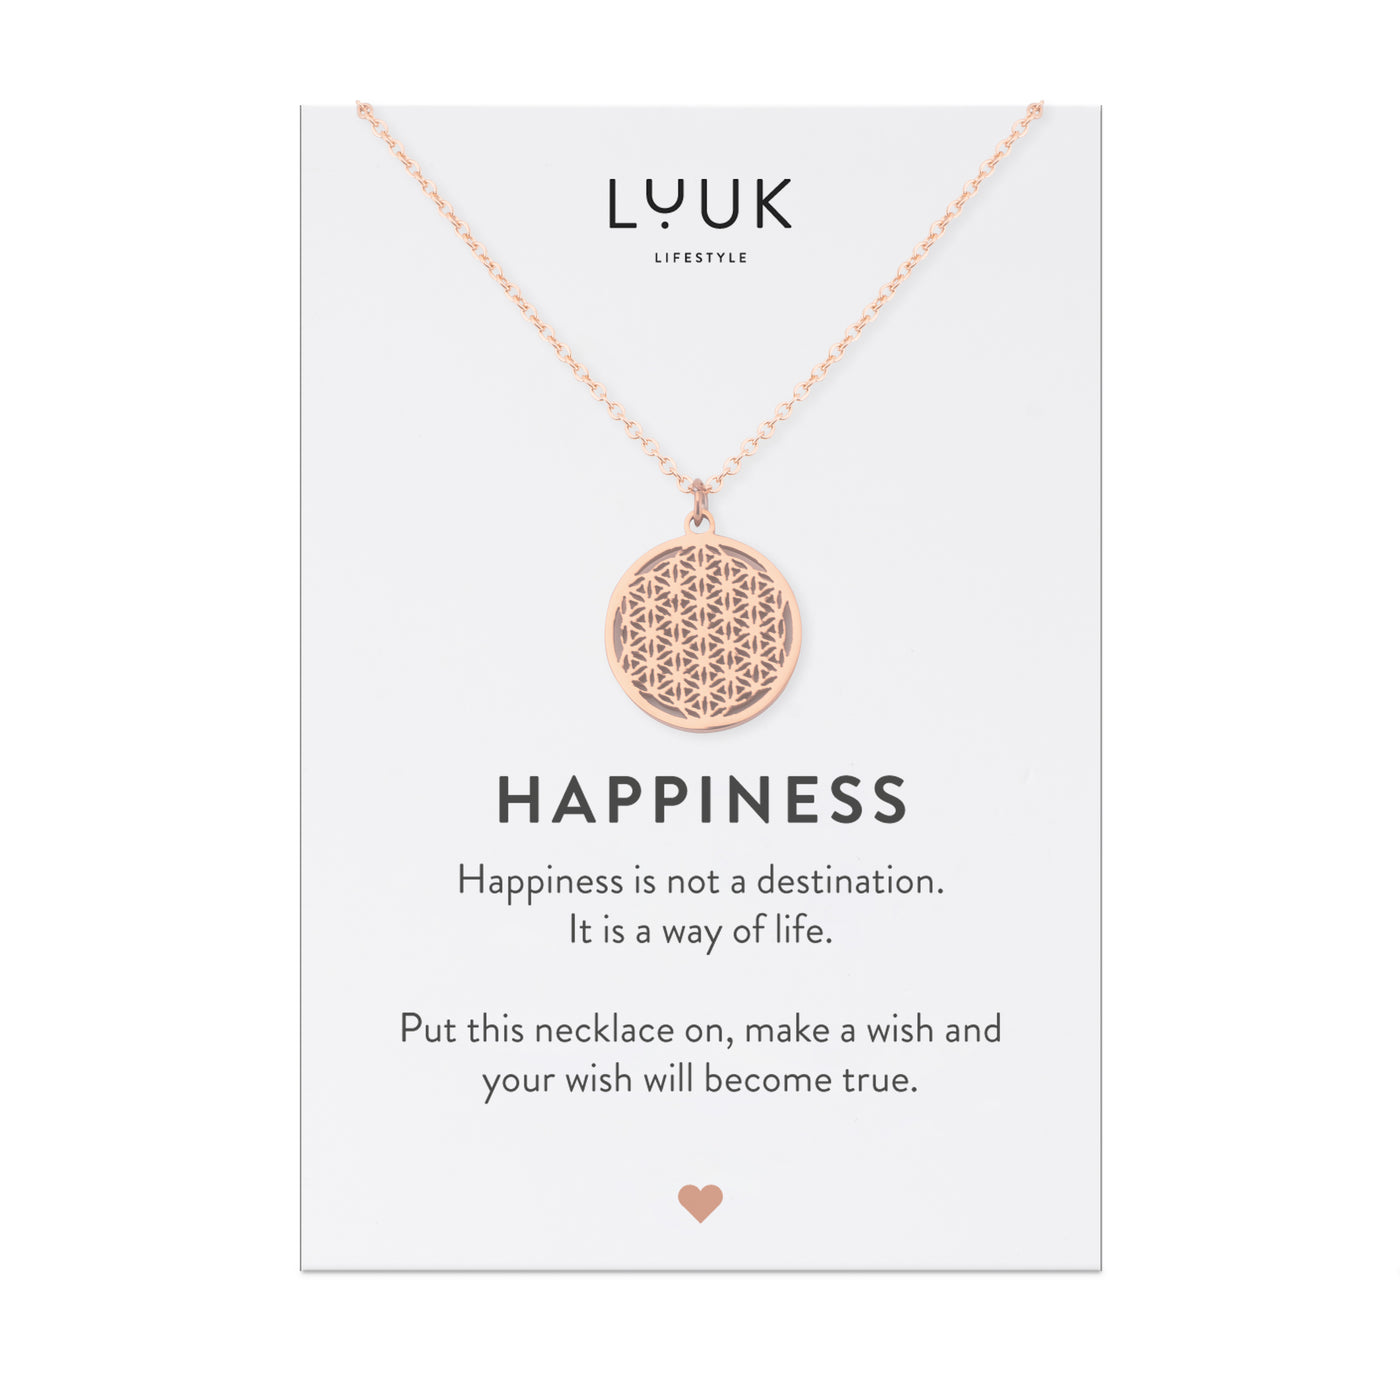 Rosegoldene Halskette mit Blume des Lebens Anhänger auf Happiness Karte von Luuk Lifestyle.